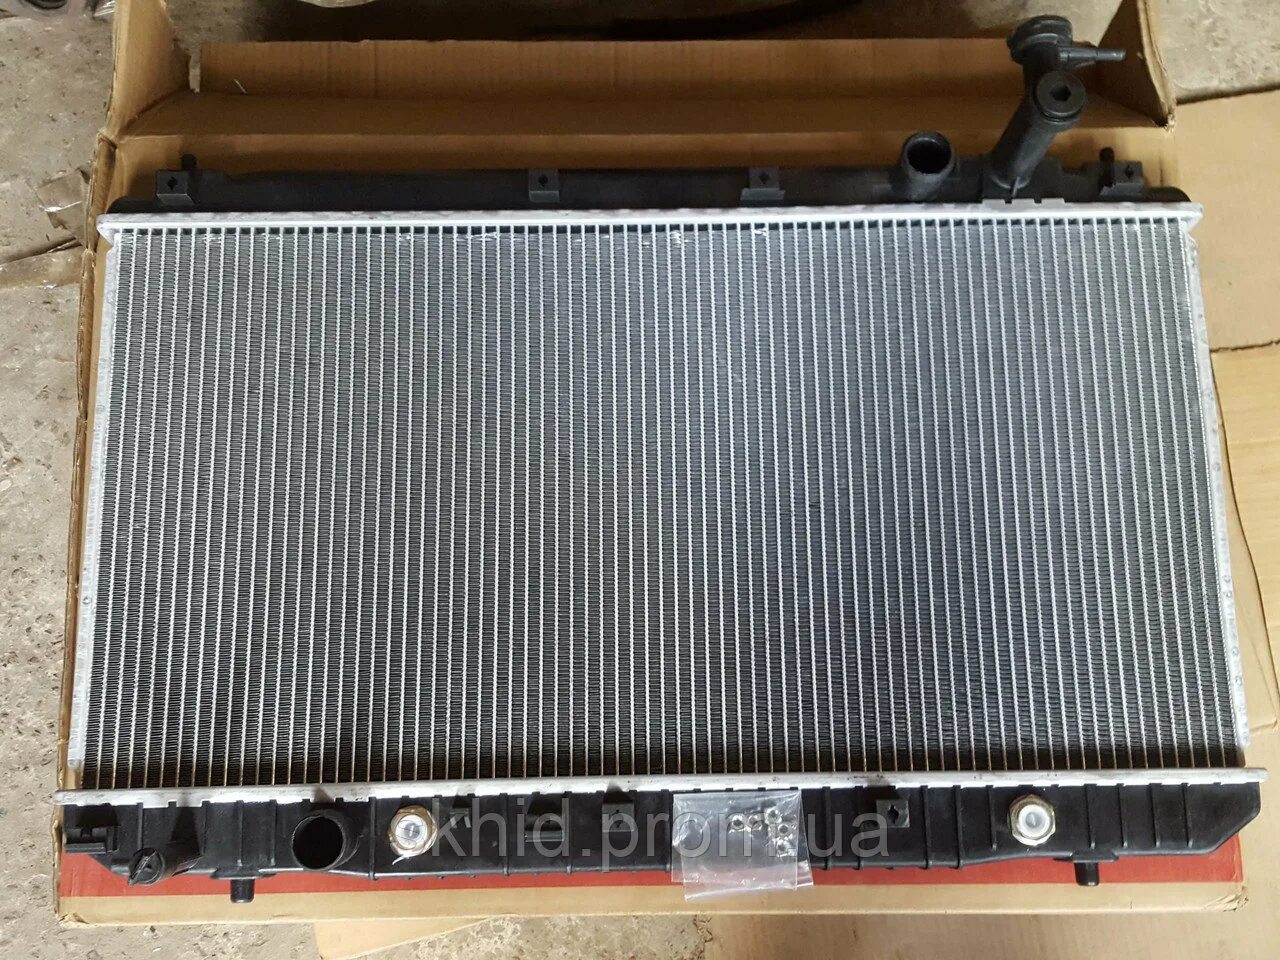 Радиатор чери тигго 8. Радиатор охлаждения Tiggo 2,4 (t11-1301110). T11-1301110ca. Chery Tiggo 2 радиатор охлаждения. Радиатор Chery Tiggo t11 2.4.